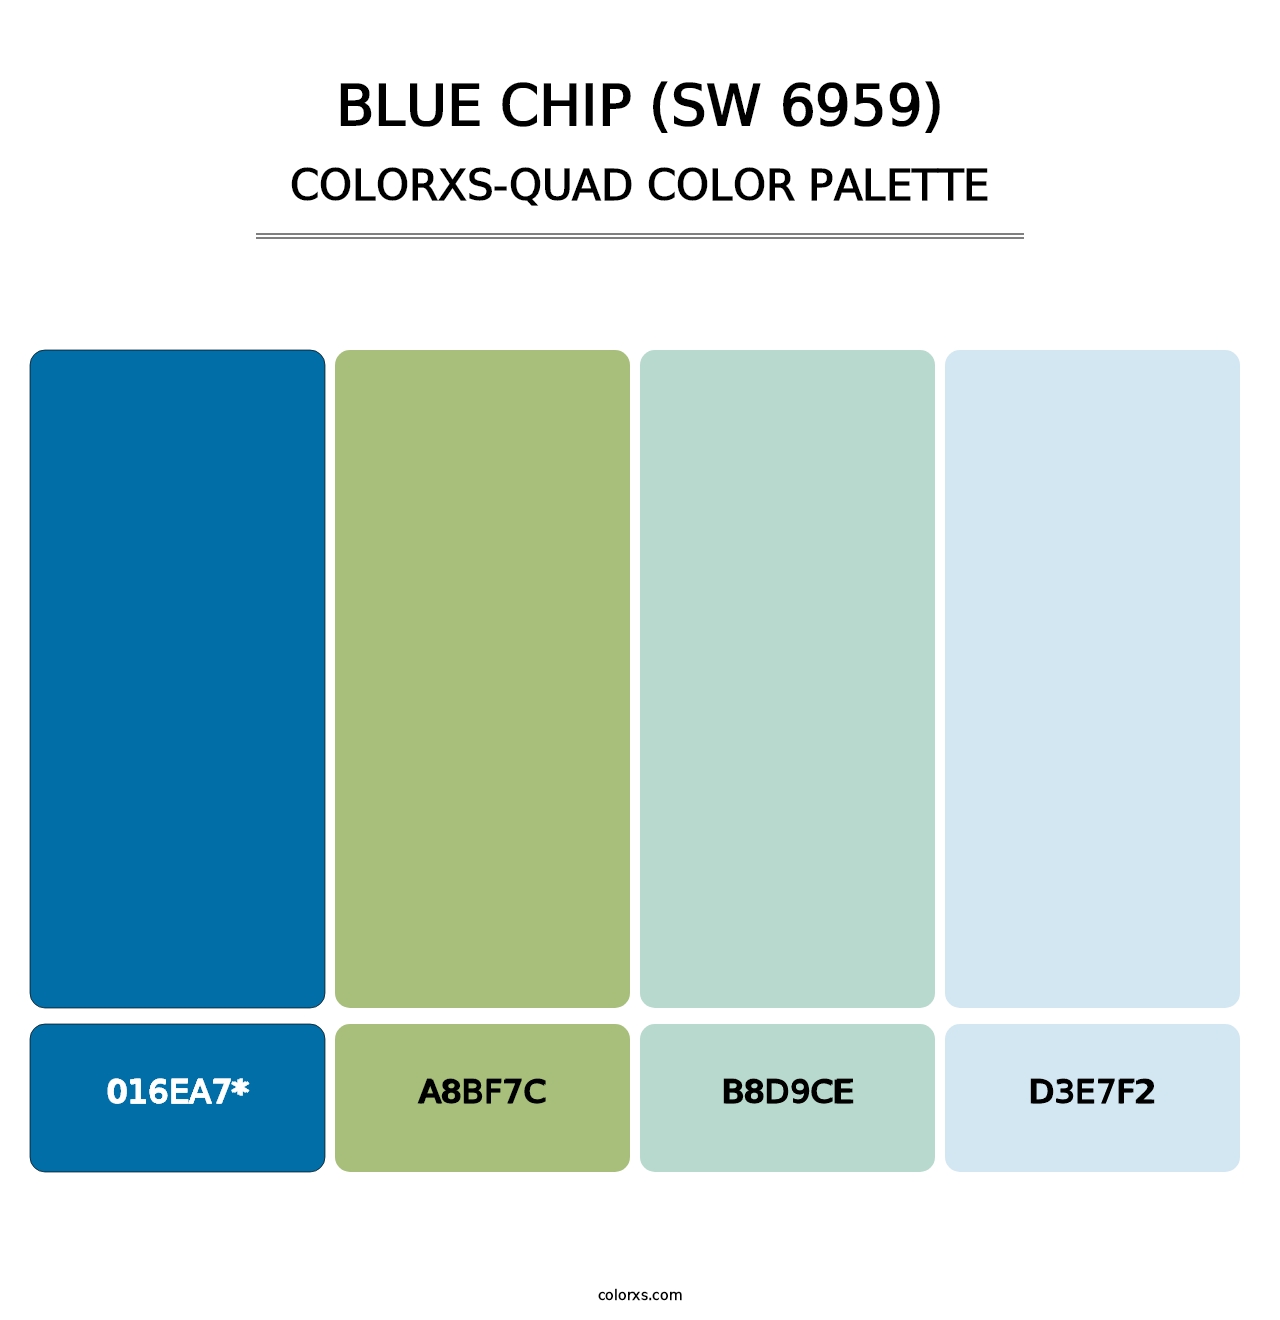 Blue Chip (SW 6959) - Colorxs Quad Palette